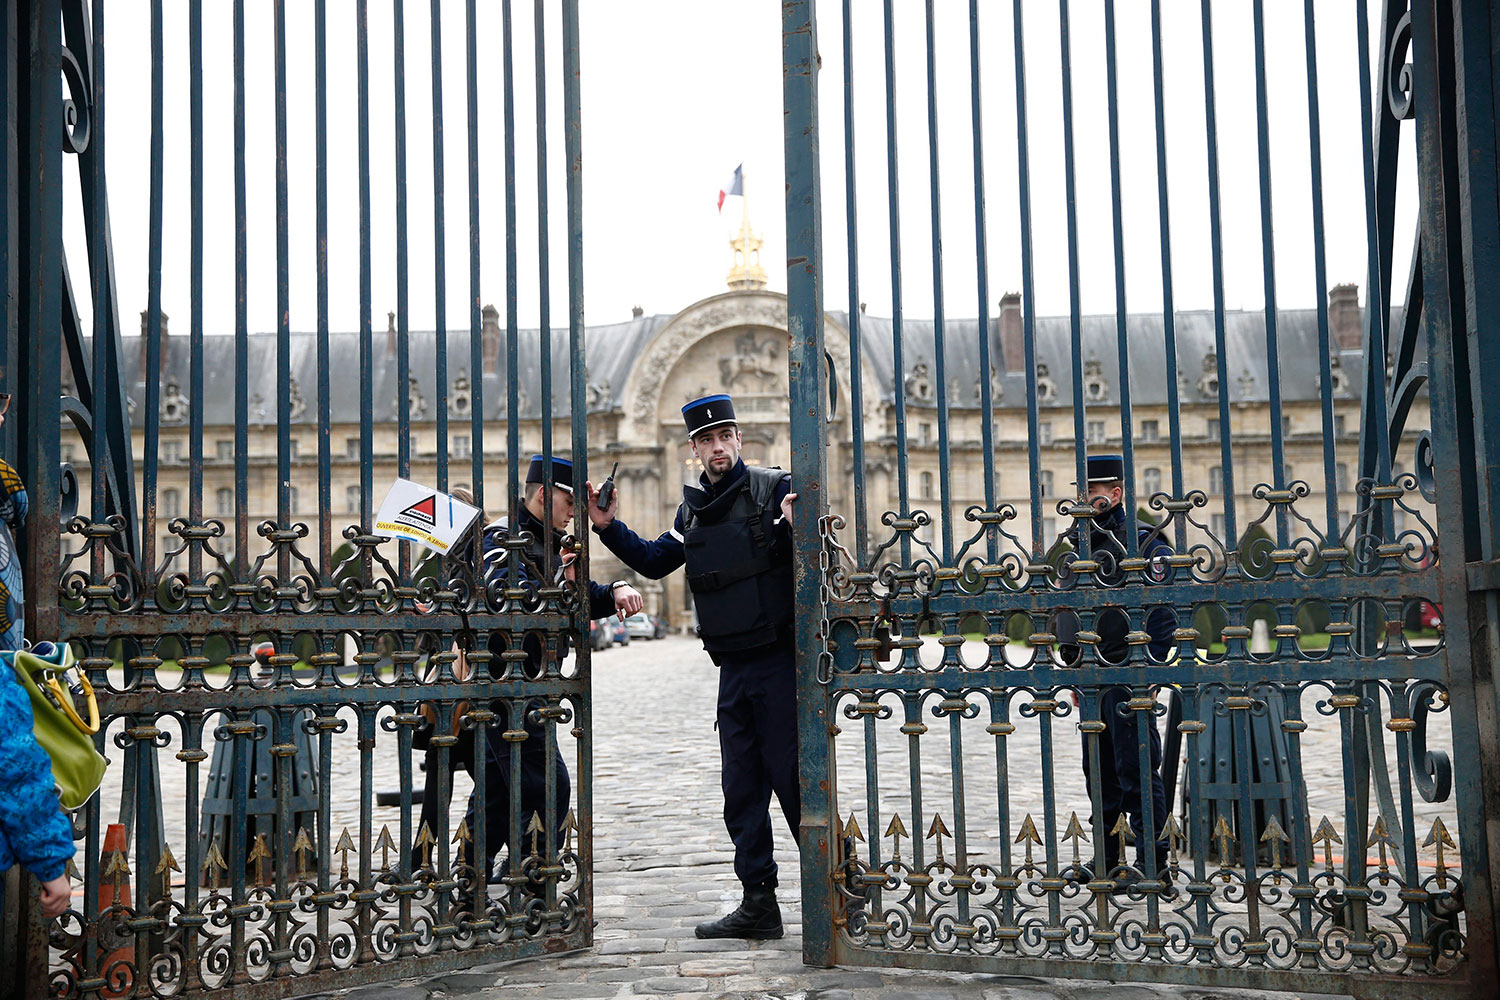  Con misil falso, hombre causa pánico en París